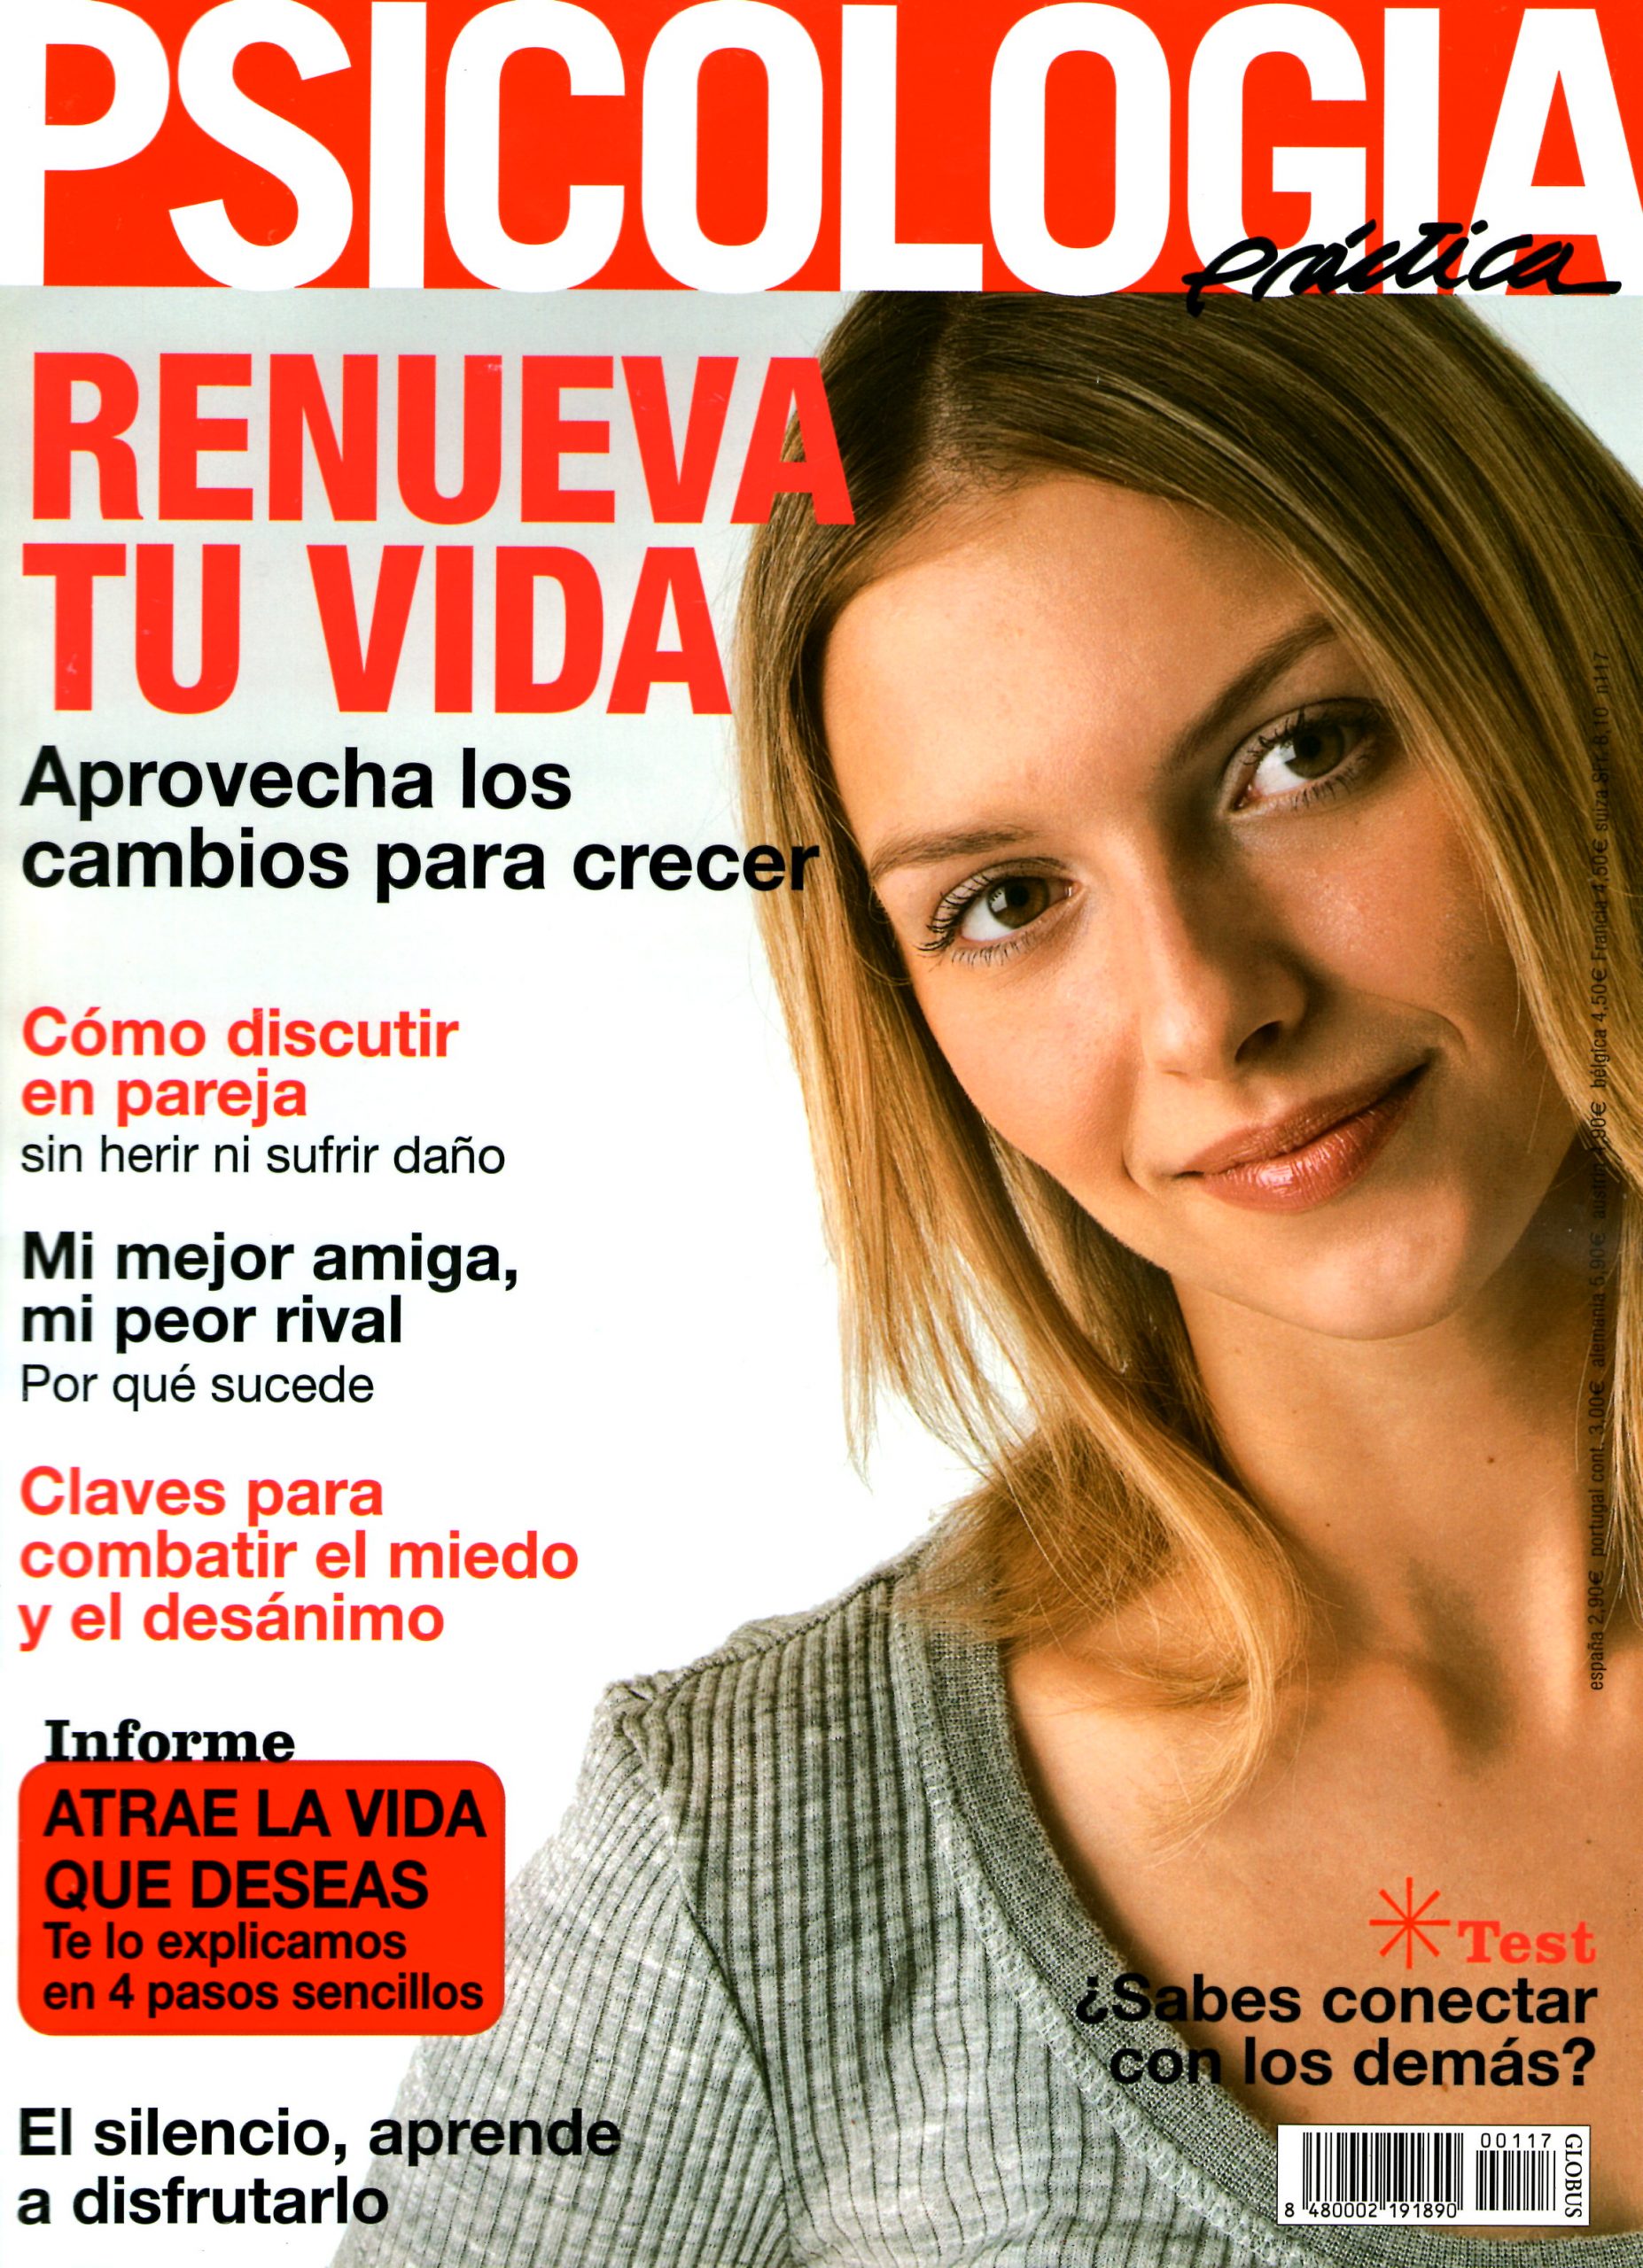 ESCRIBIR-PARA-CONOCERTE-MEJOR-portada-PSICOLOGÍA-PRÁCTICA-1-2008-Mar-Cantero